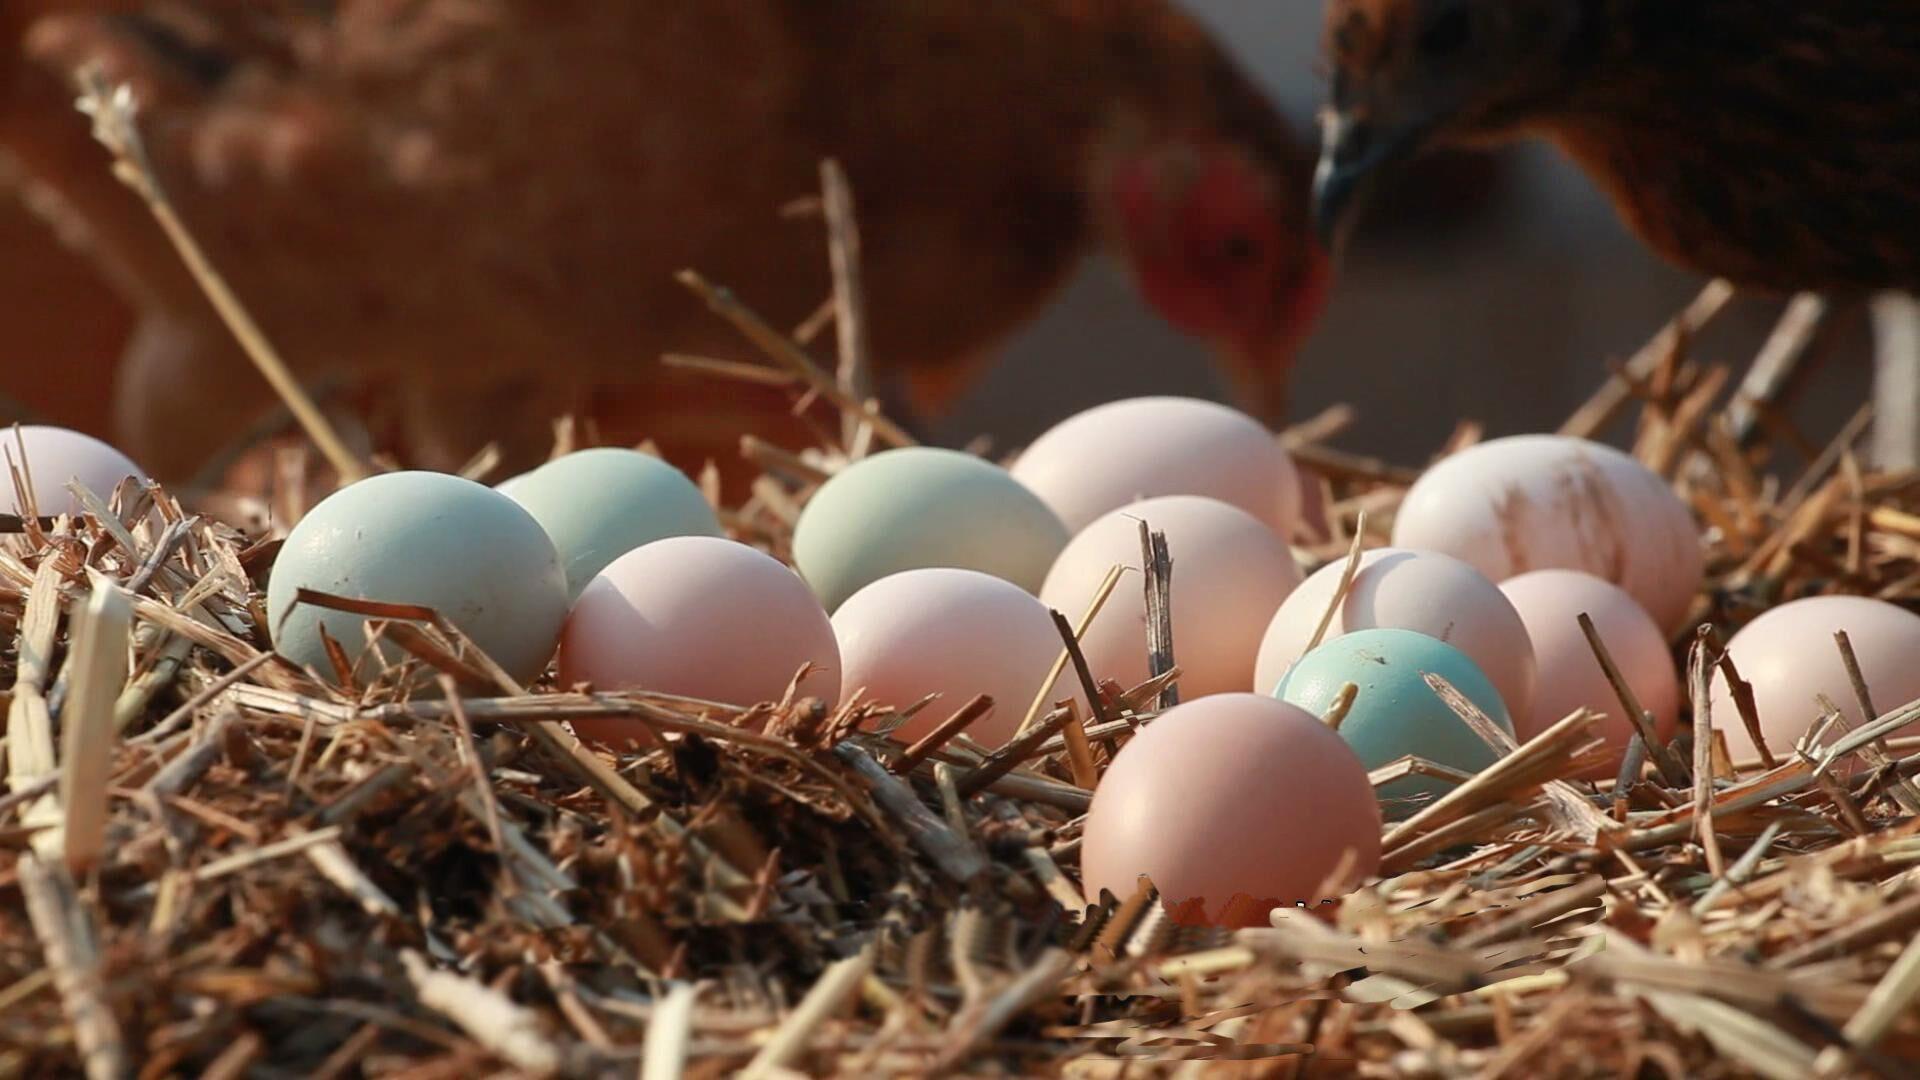 土鸡蛋农村正宗野外散养天然新鲜笨鸡蛋柴鸡蛋虫草蛋初产蛋30枚